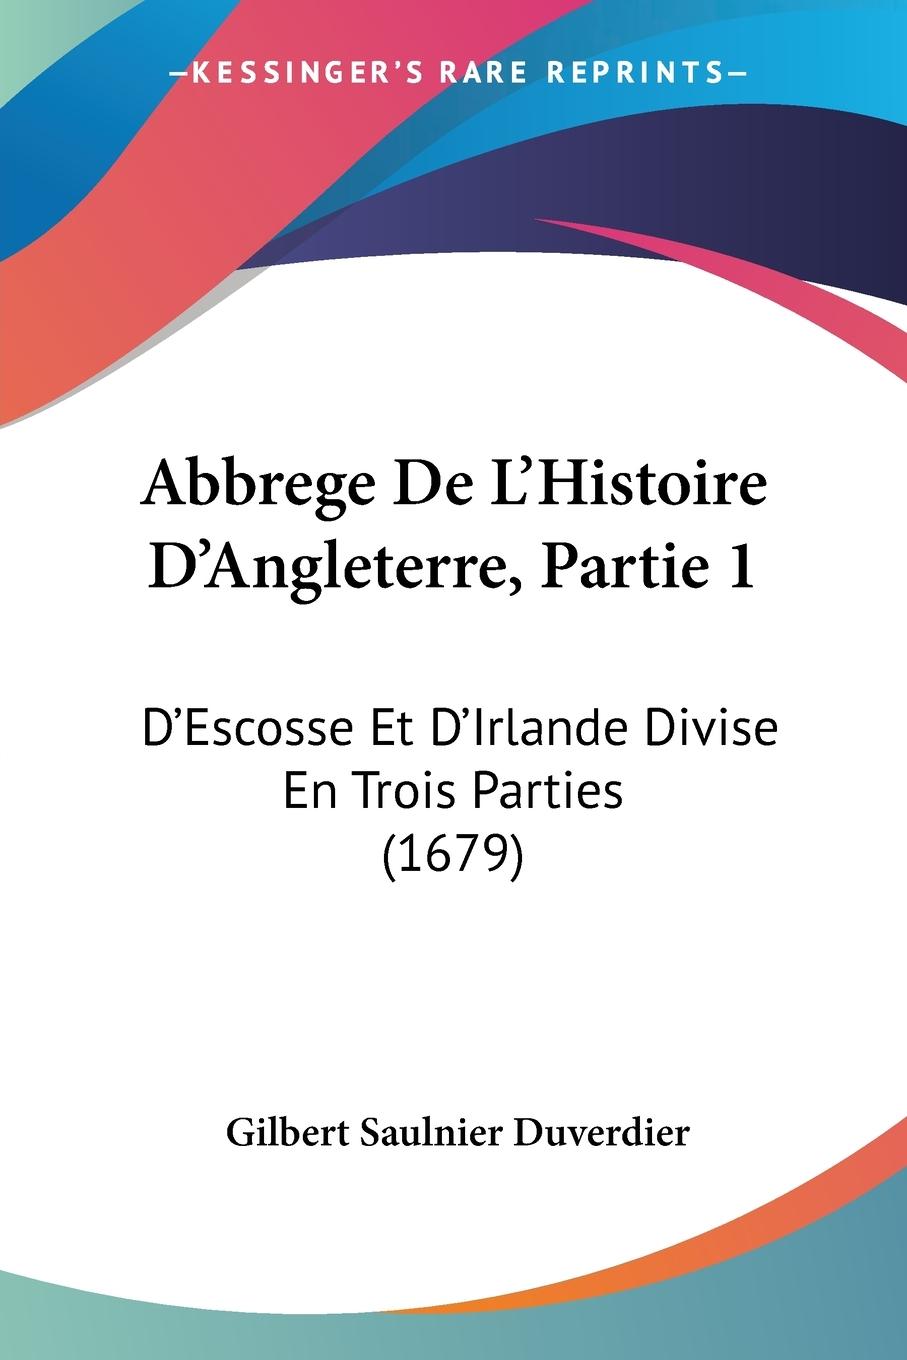 Abbrege De L Histoire D Angleterre, Partie 1 - Duverdier, Gilbert Saulnier